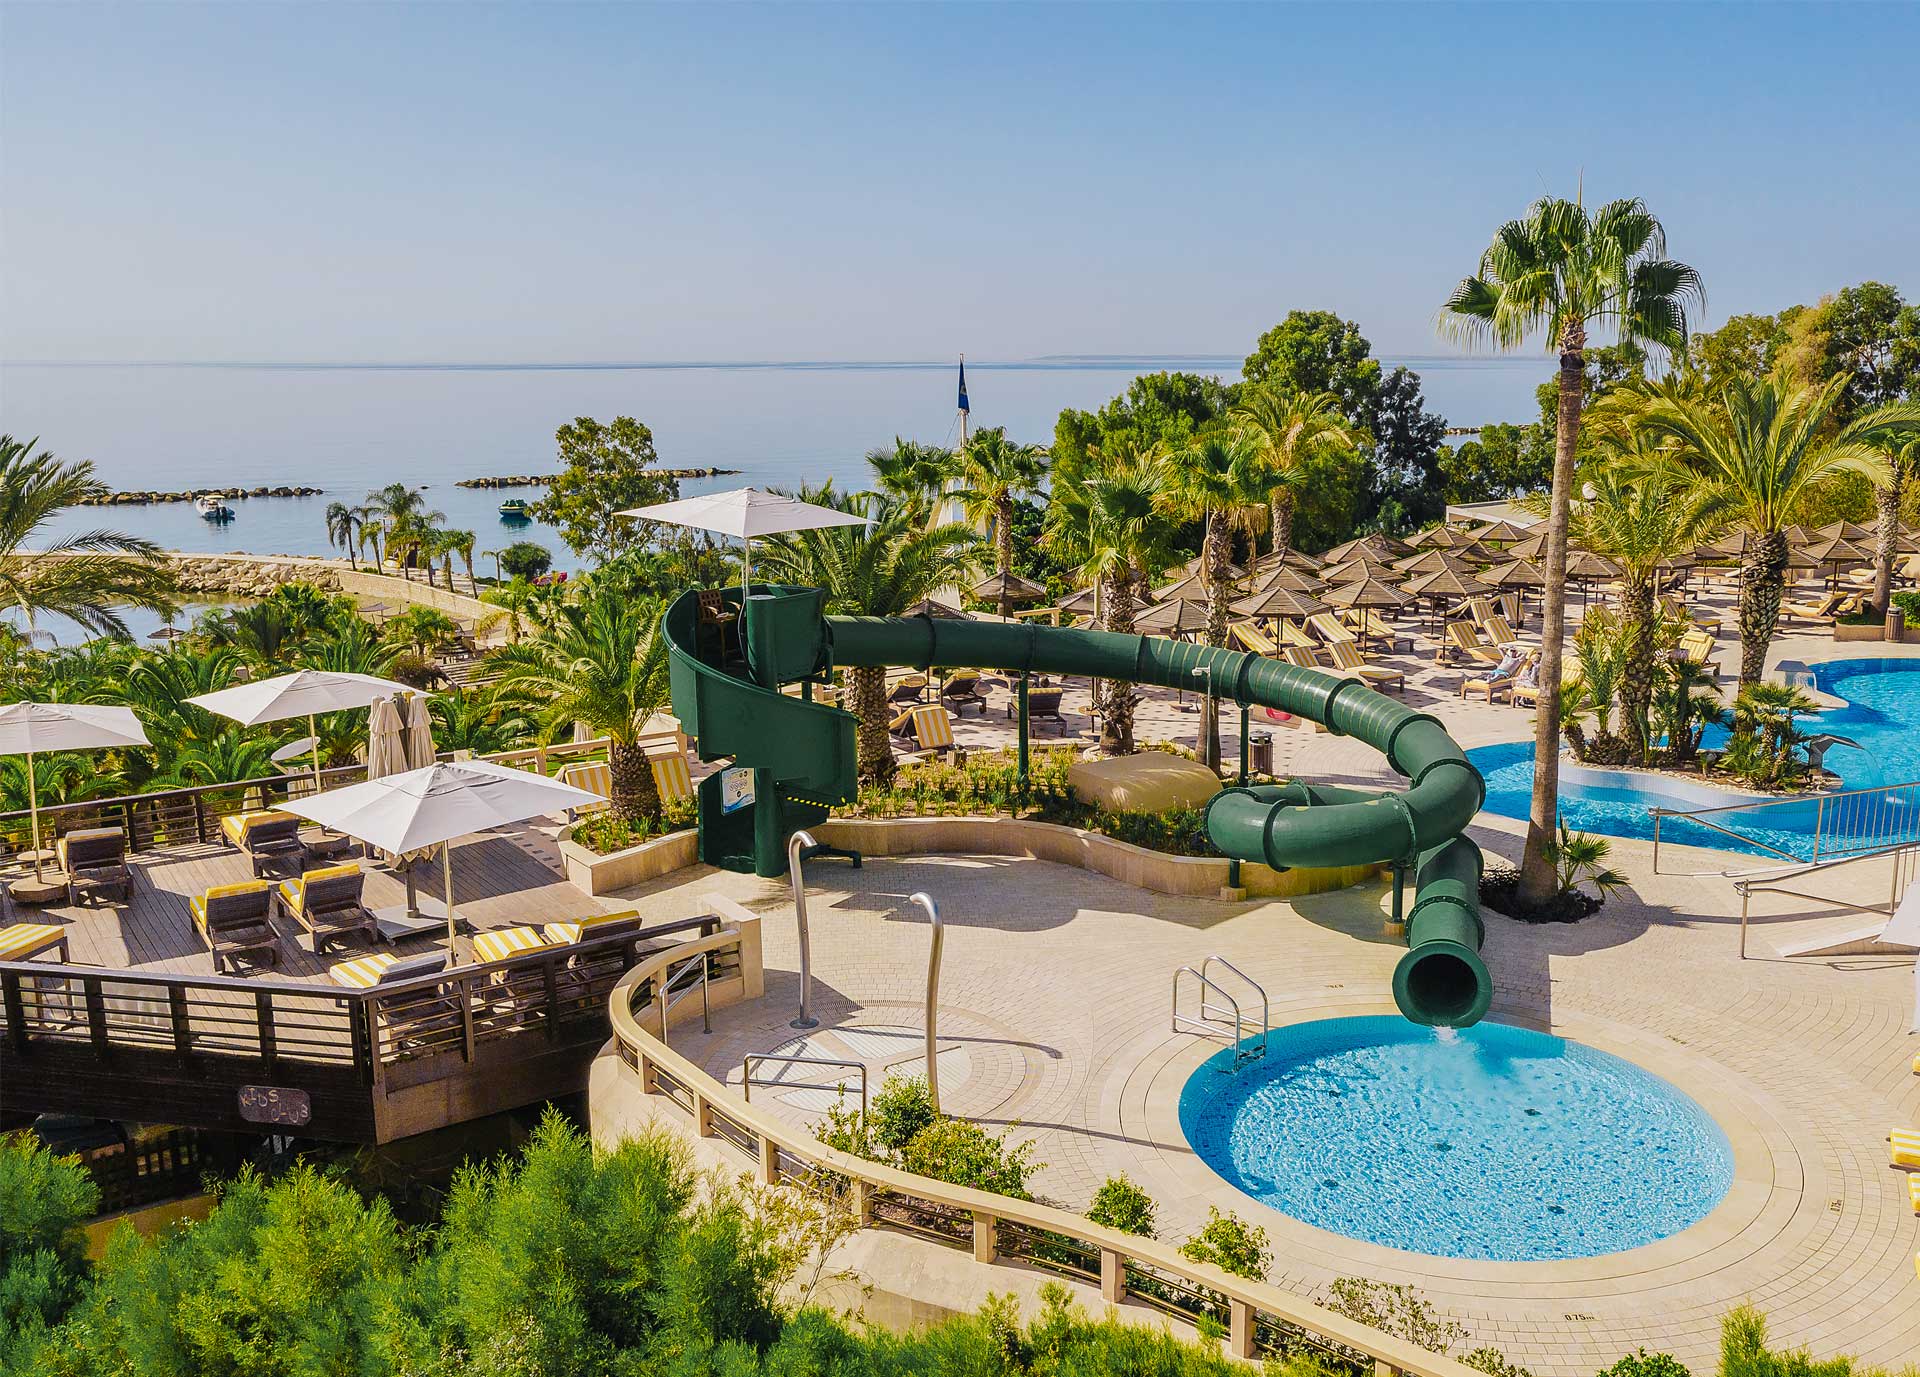 Cypr hotele dla rodzin z dziećmi atrakcje dla dzieci opinie z basenem aquaparkiem